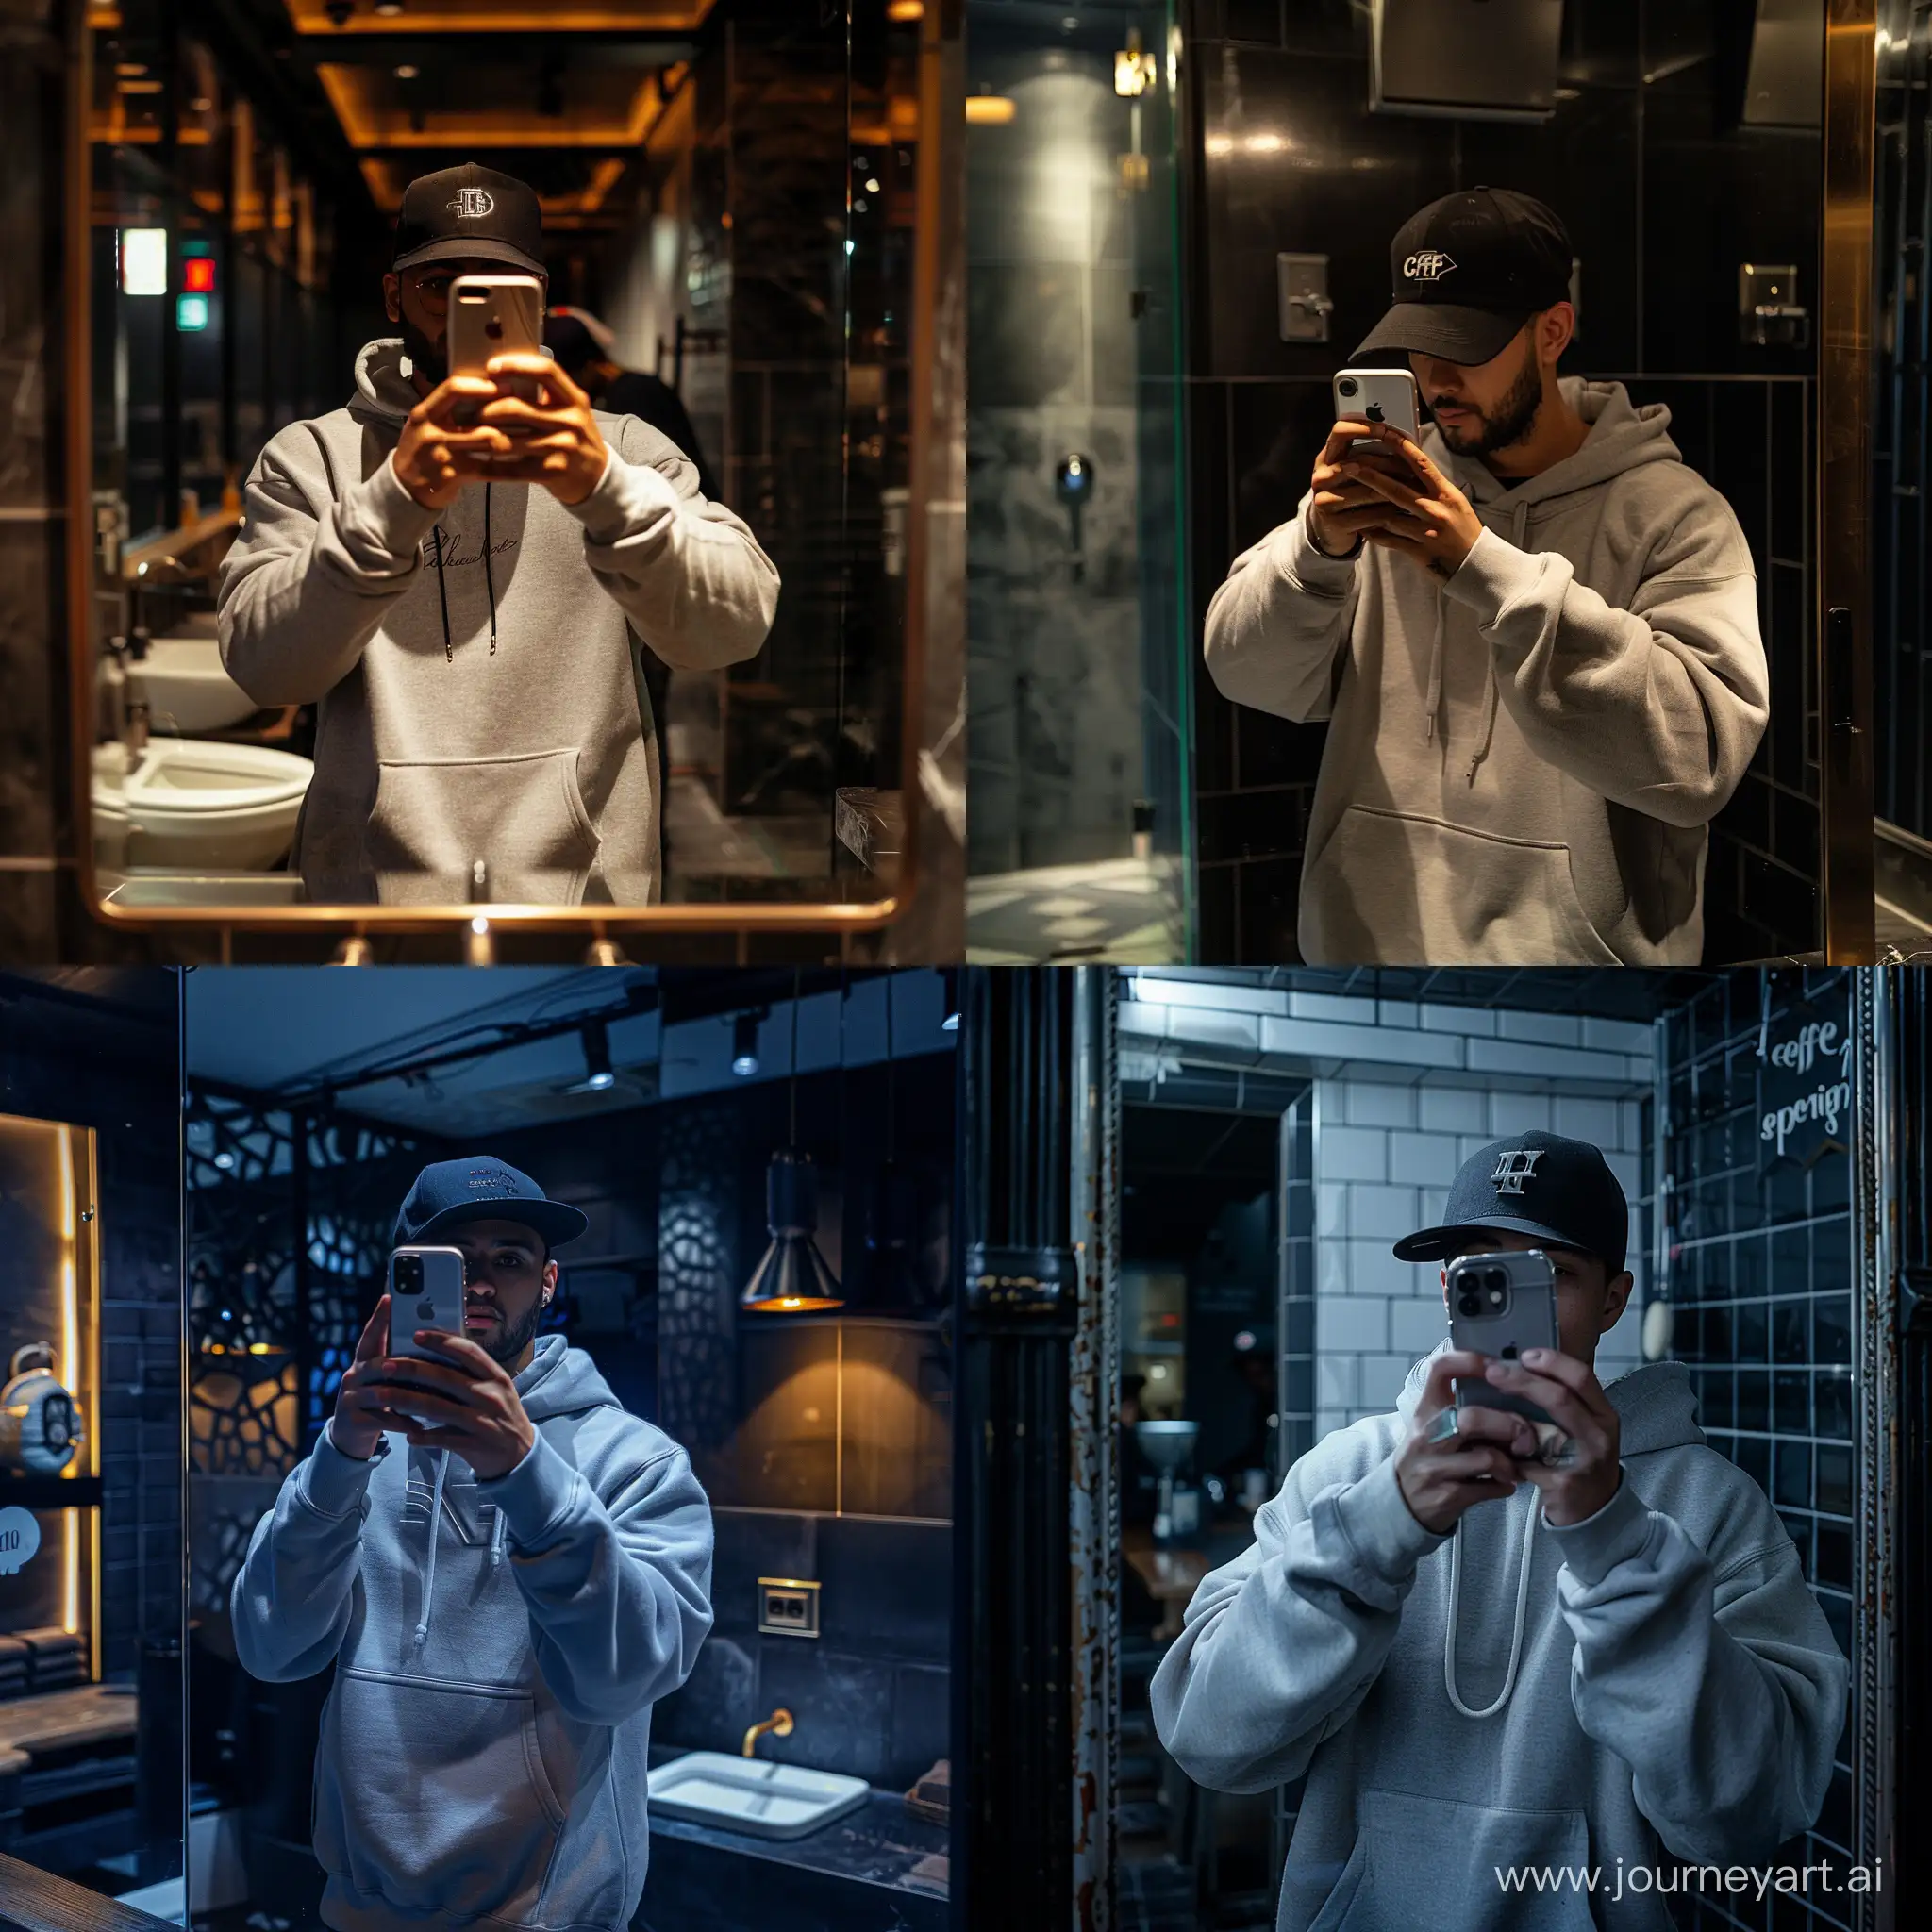 Man-in-HighEnd-Cafe-Bathroom-Taking-iPhone-11-Mirror-Selfie